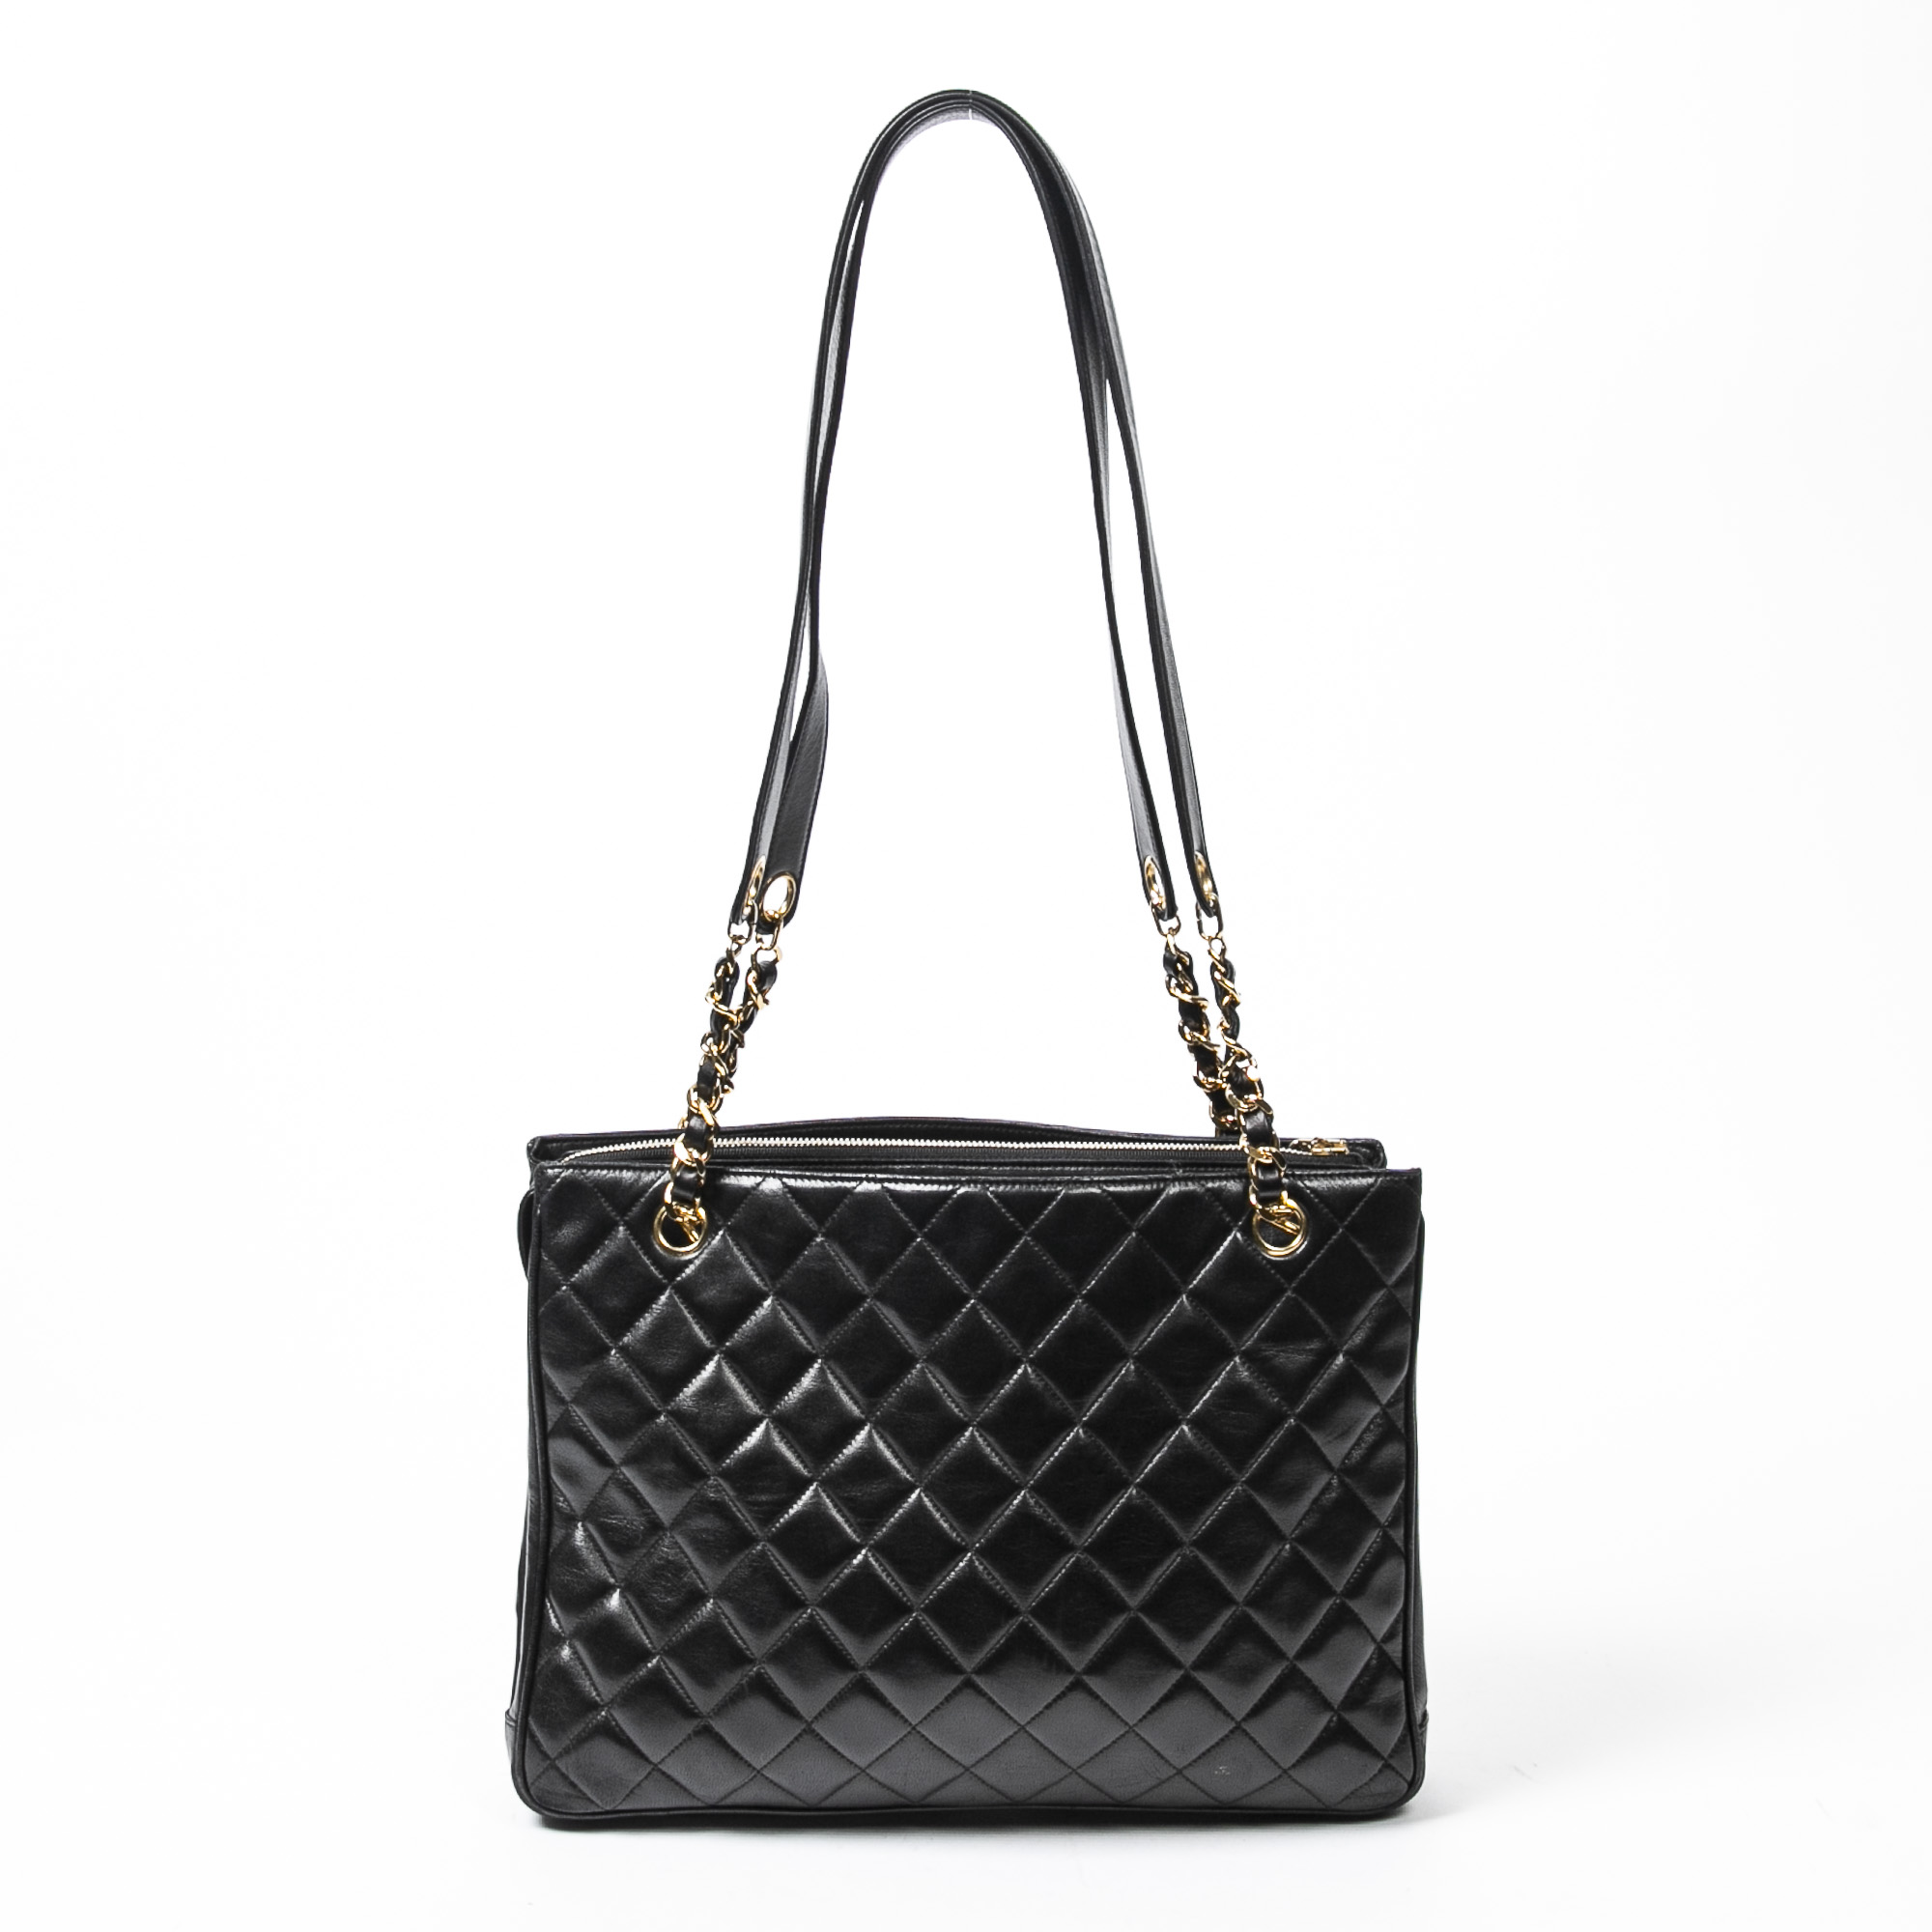 Lot 273 - Chanel Black Chain Shoulder Bag